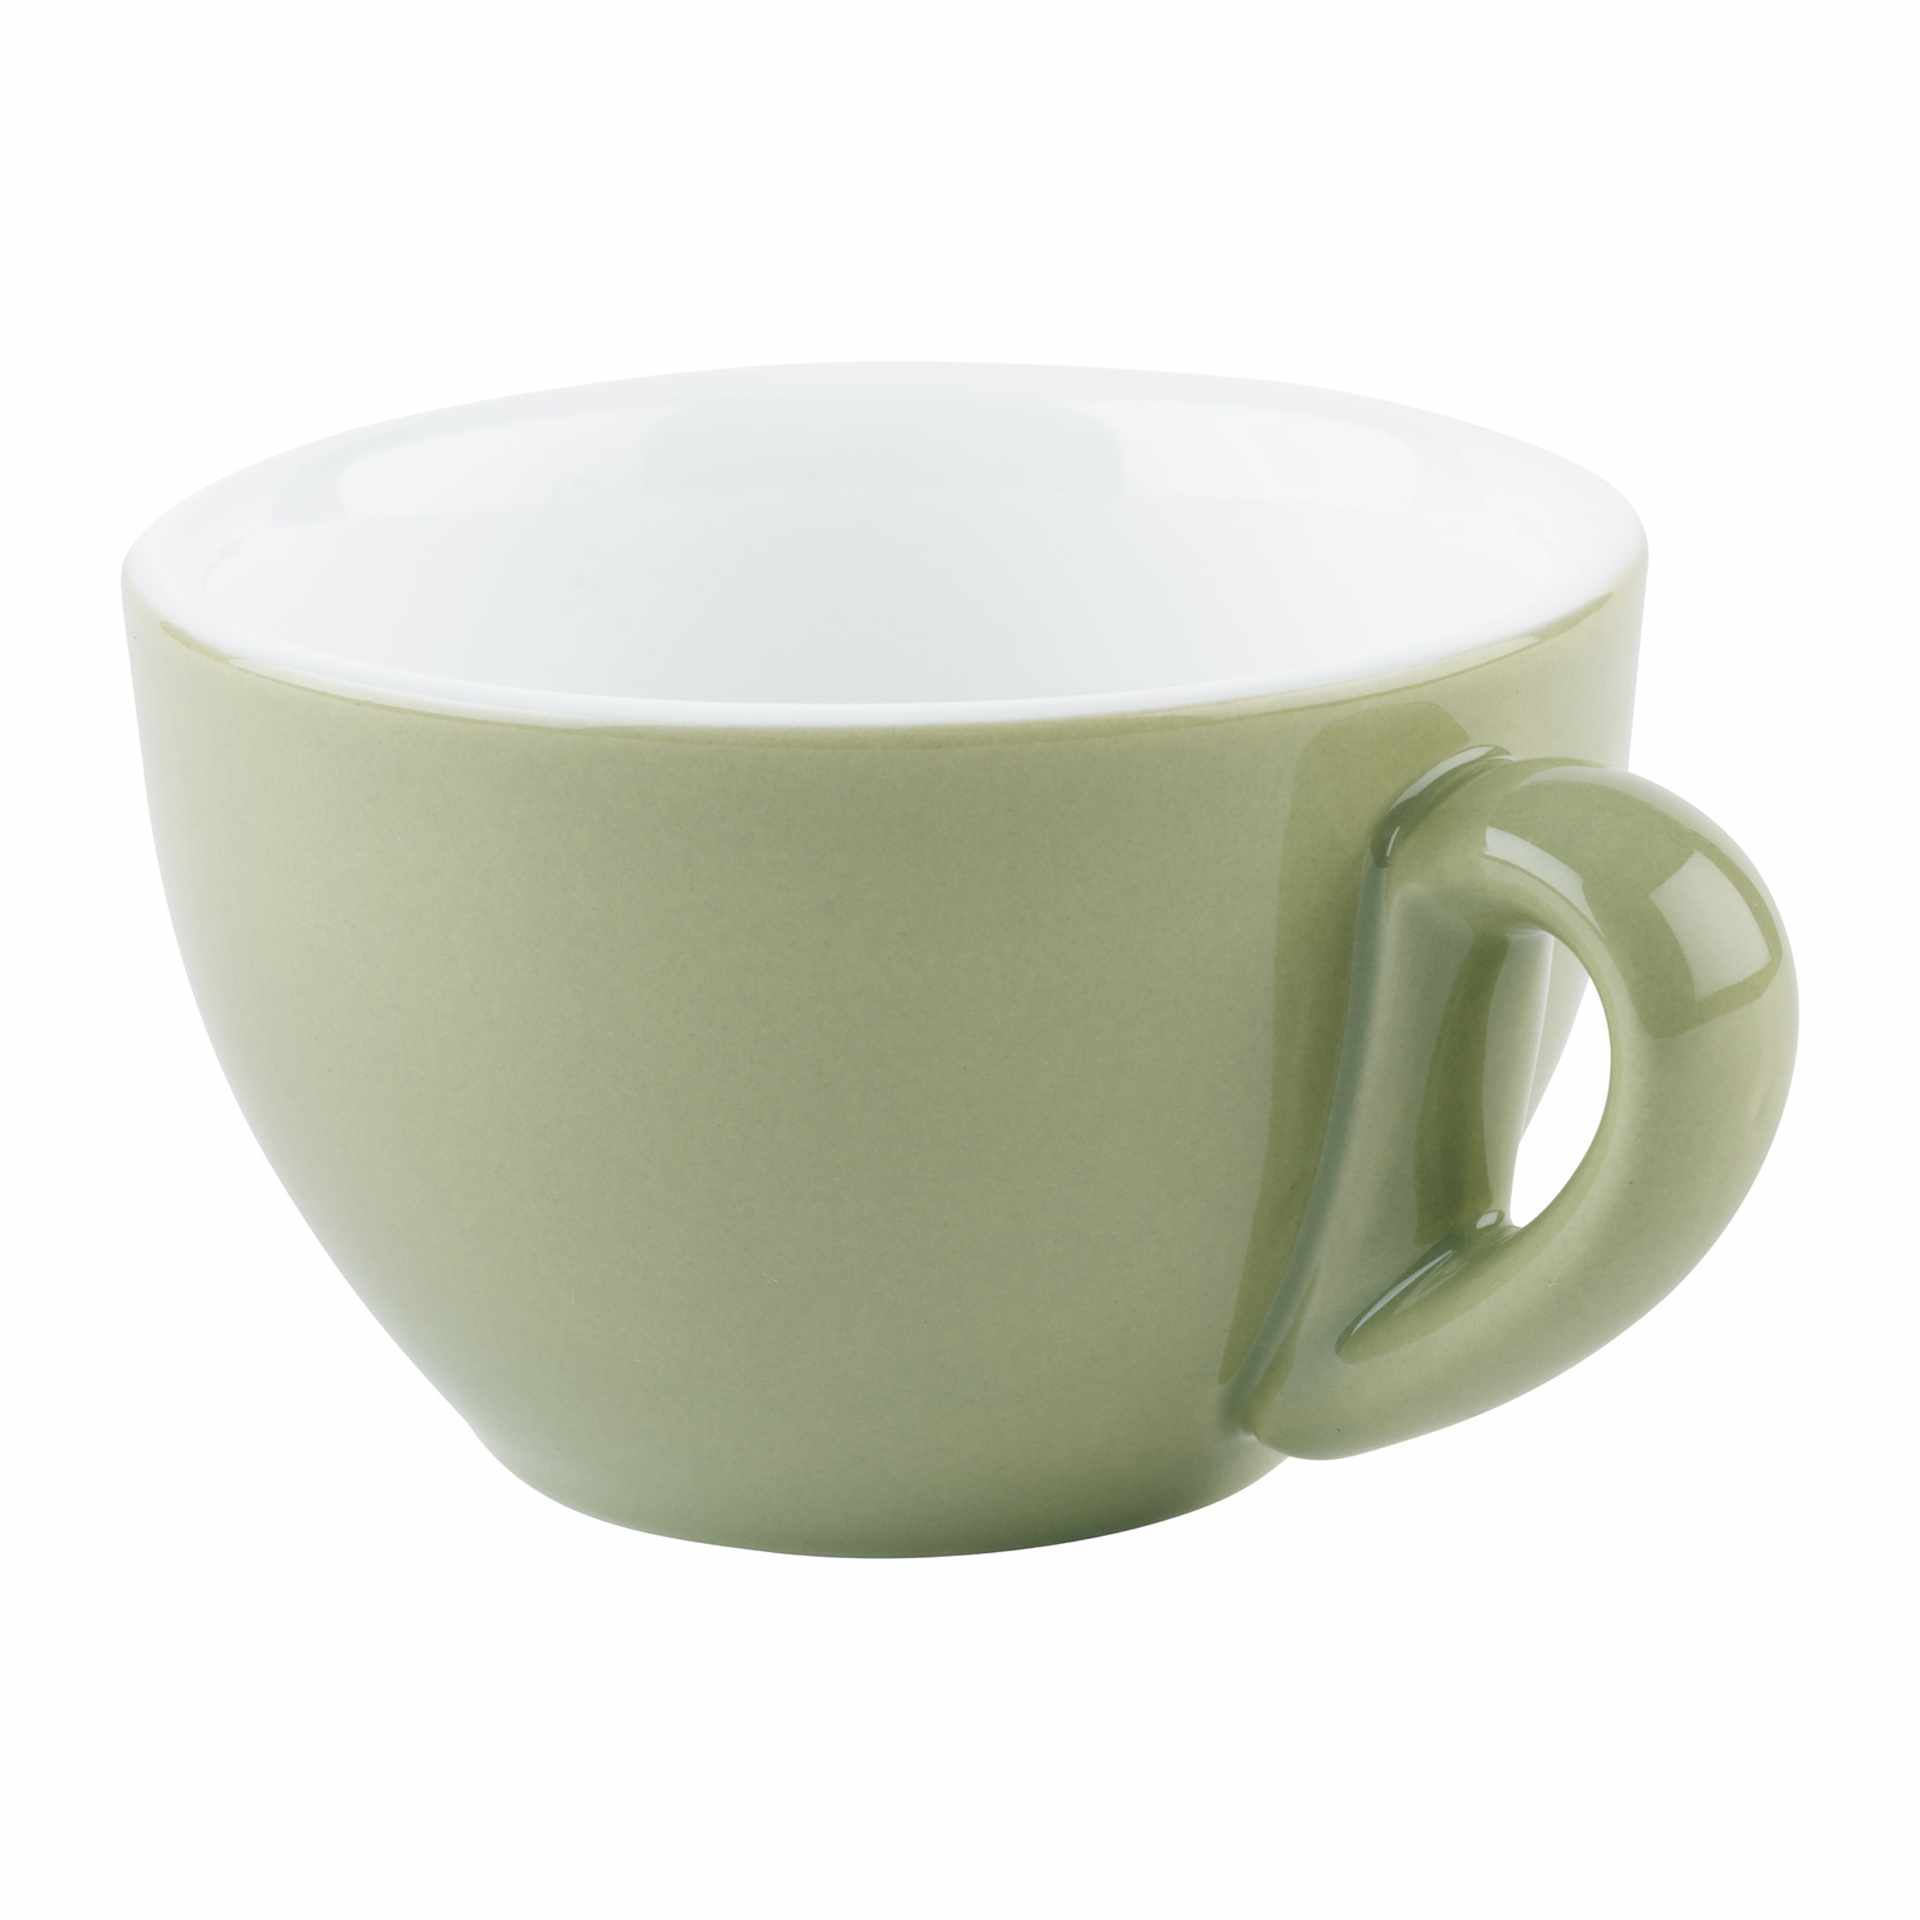 Kaffee-Tasse - Serie Snug - grün - Höhe 6,0 cm - Ø 9,5 cm - Inhalt 0,20 l - Porzellan - 16004-B